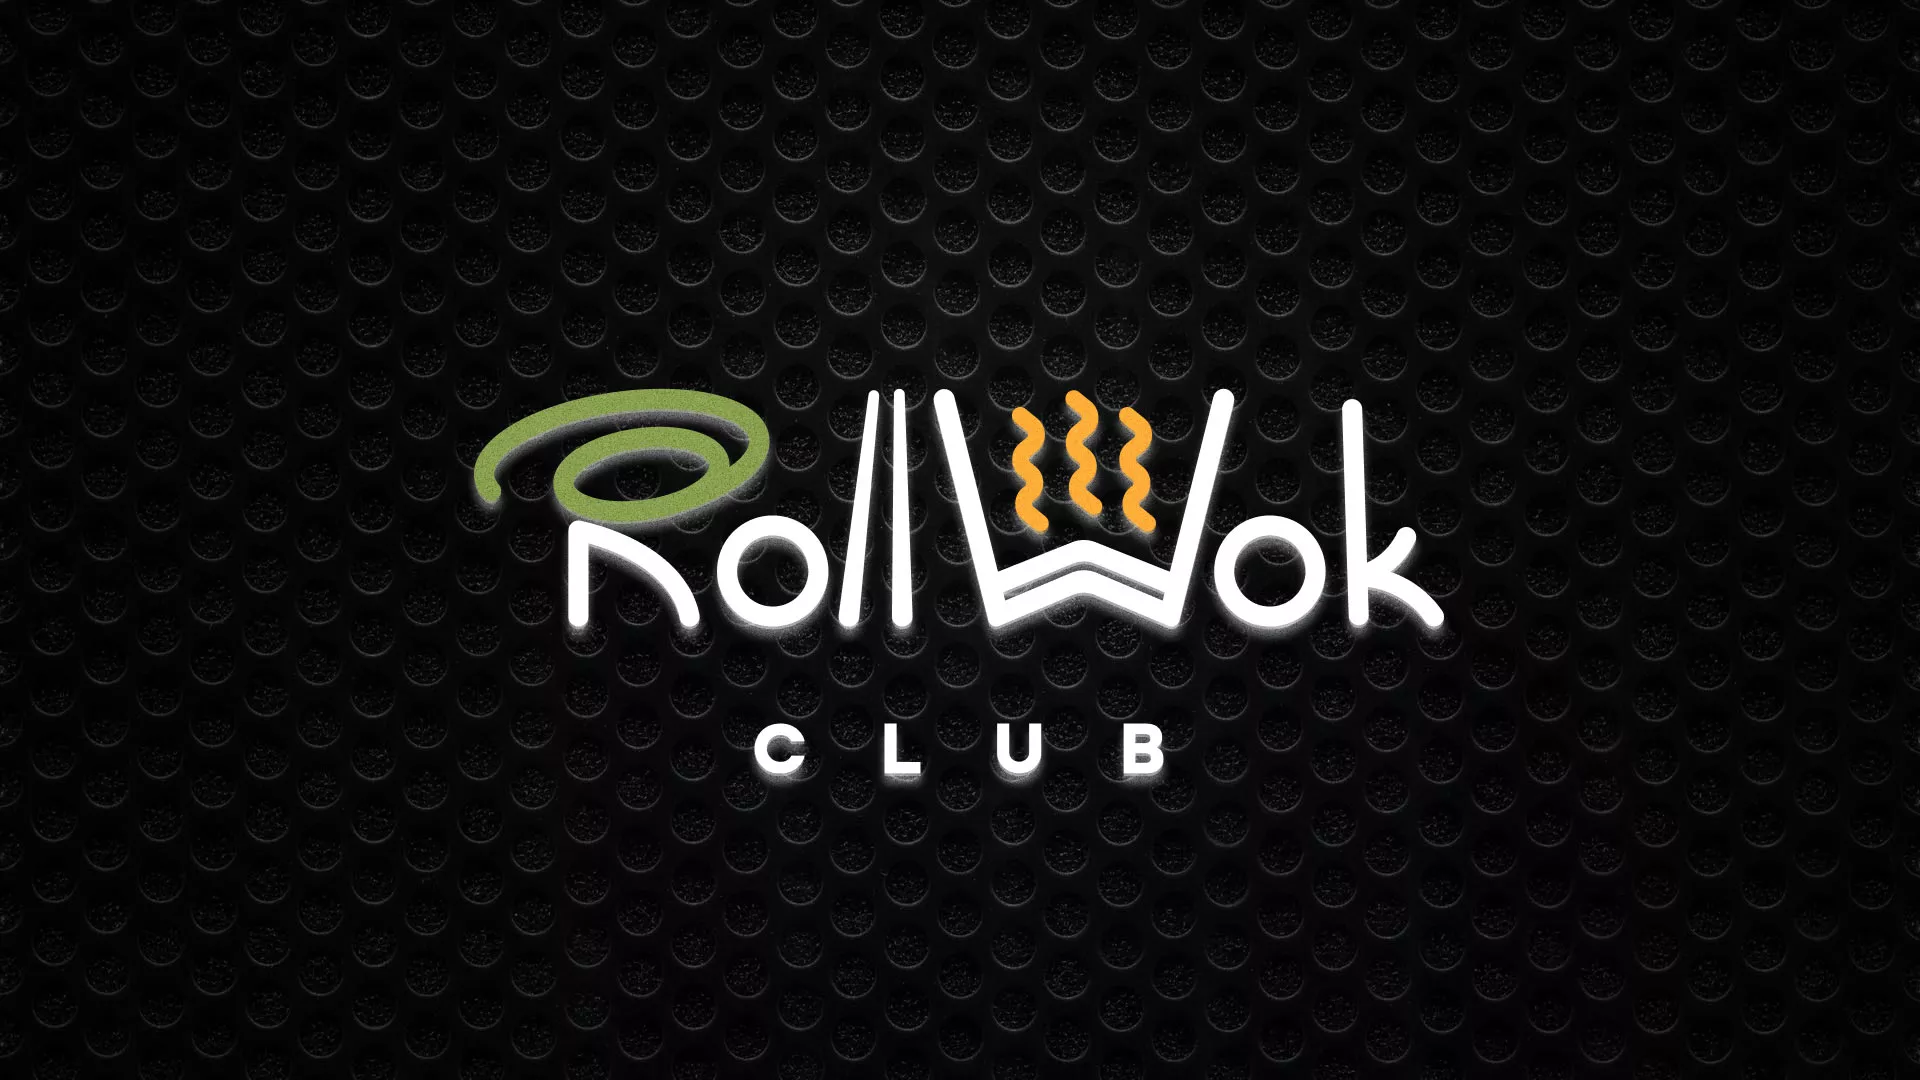 Брендирование торговых точек суши-бара «Roll Wok Club» в Сосновке